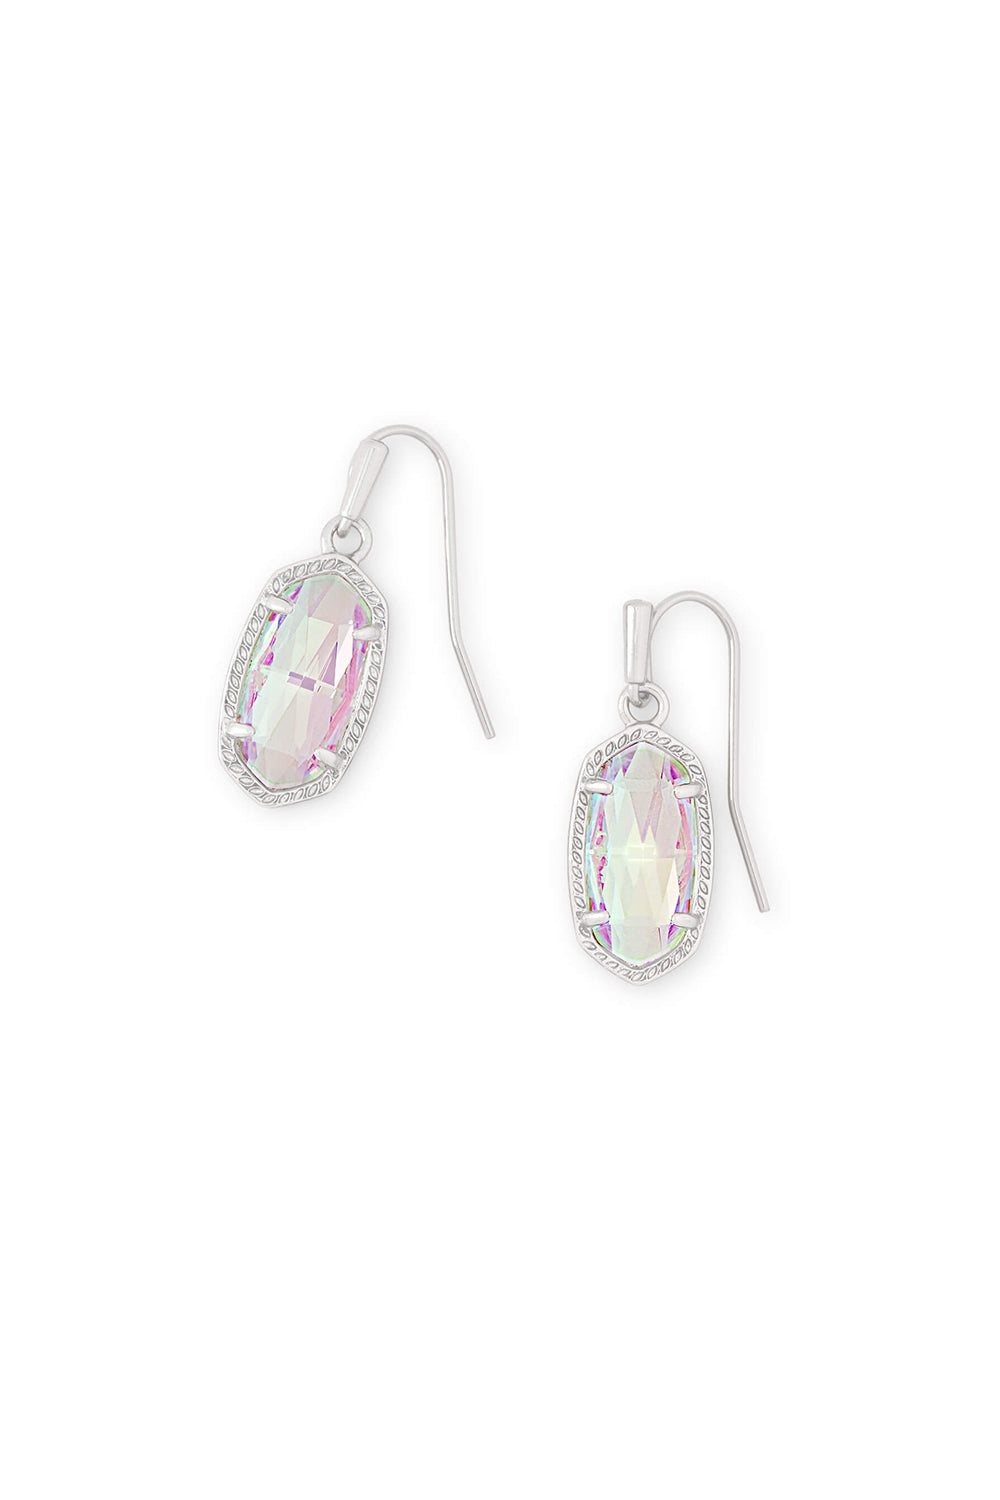 Kendra Scott: Lee Silver Drop Earrings - Dichroic Glass | Makk Fashions